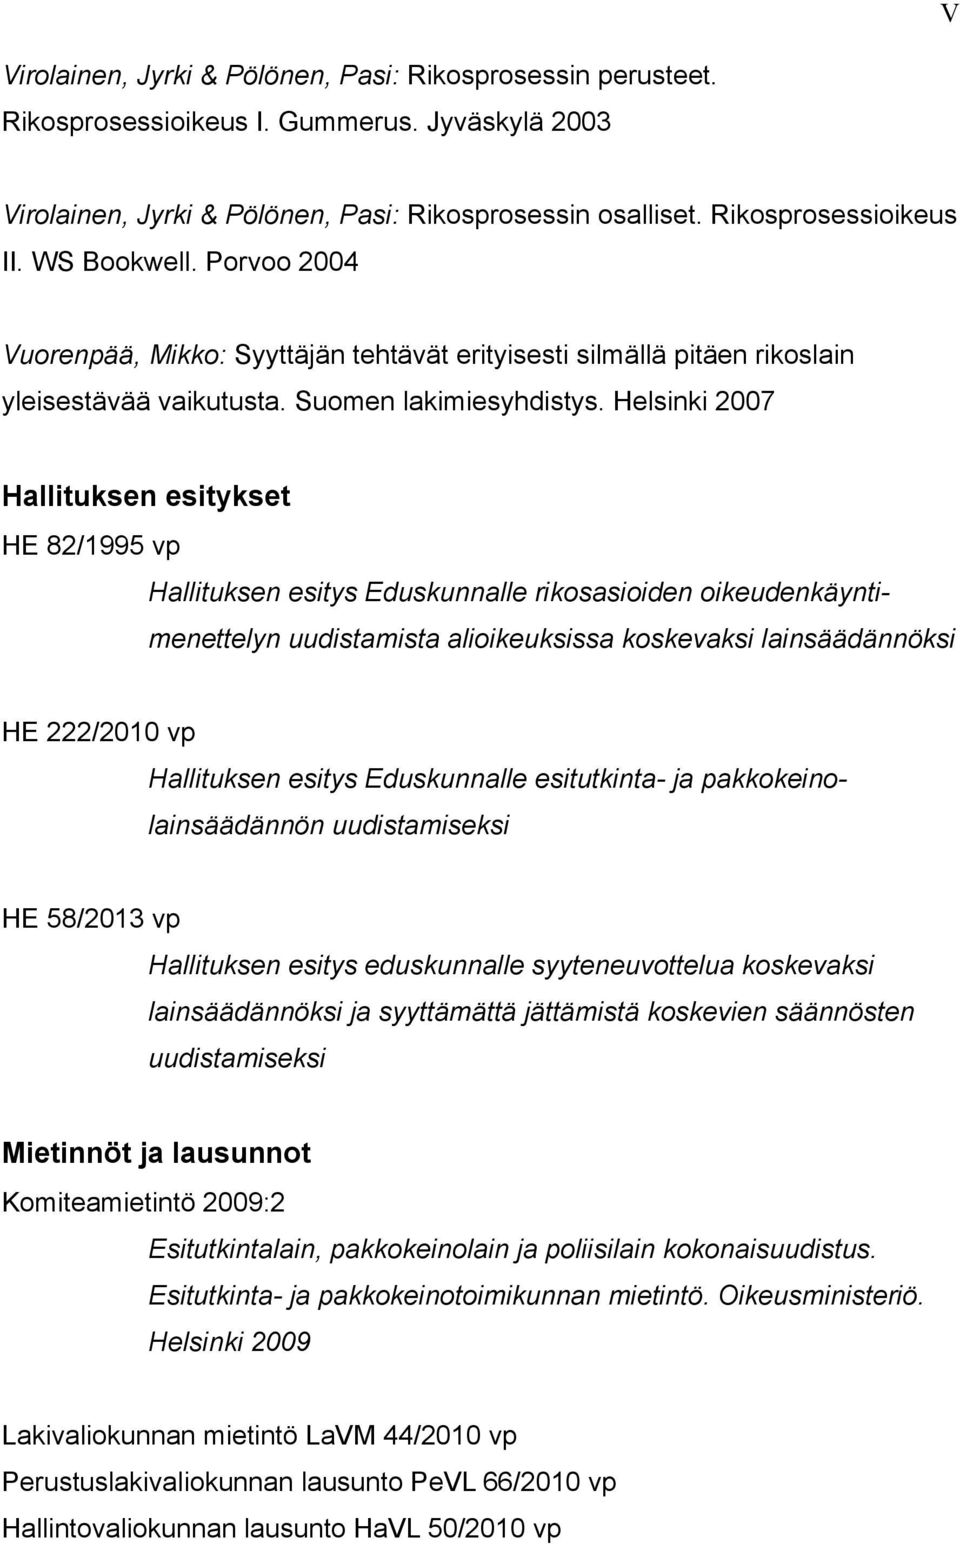 Helsinki 2007 Hallituksen esitykset HE 82/1995 vp Hallituksen esitys Eduskunnalle rikosasioiden oikeudenkäyntimenettelyn uudistamista alioikeuksissa koskevaksi lainsäädännöksi HE 222/2010 vp